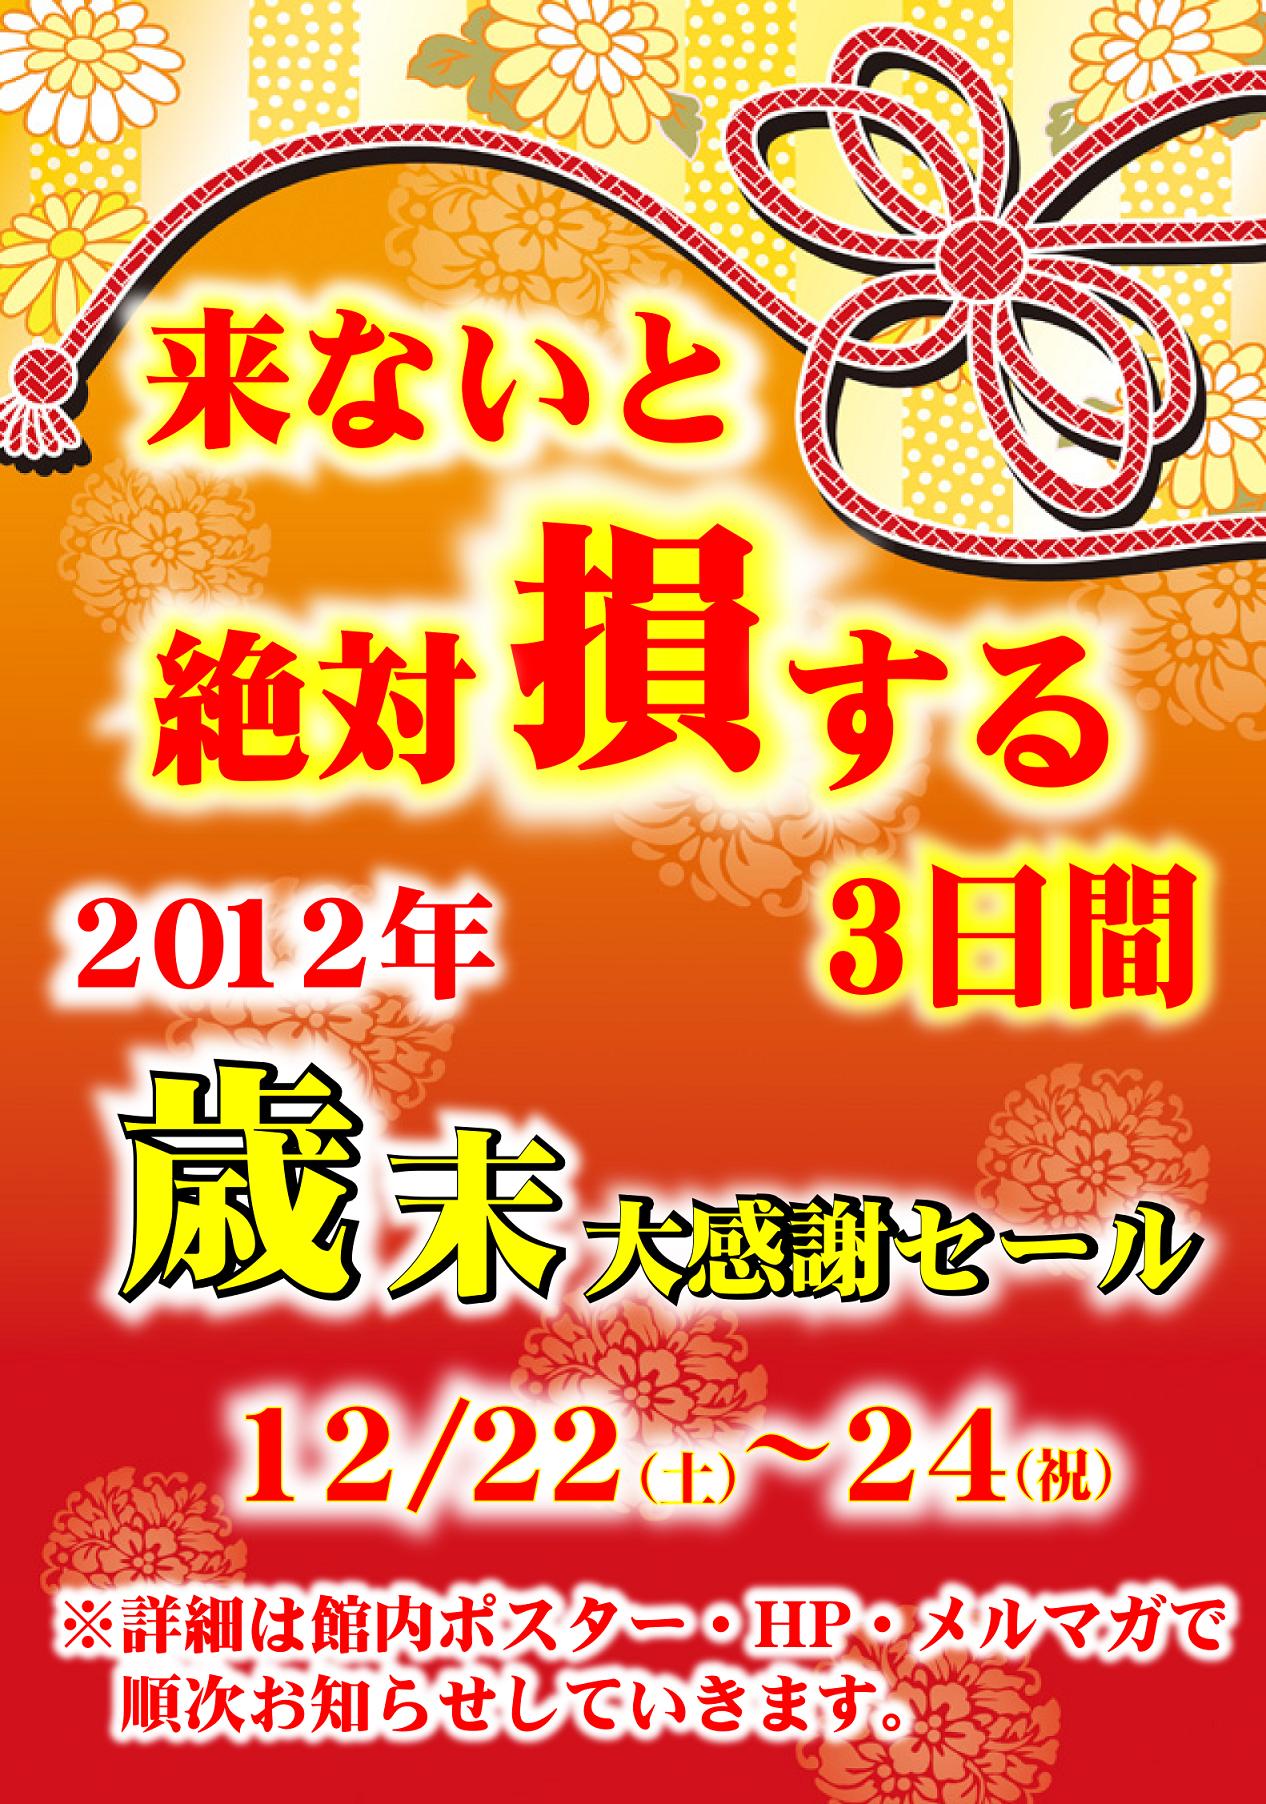 http://www.relafull.co.jp/blog/2012/12/04/12011.jpg